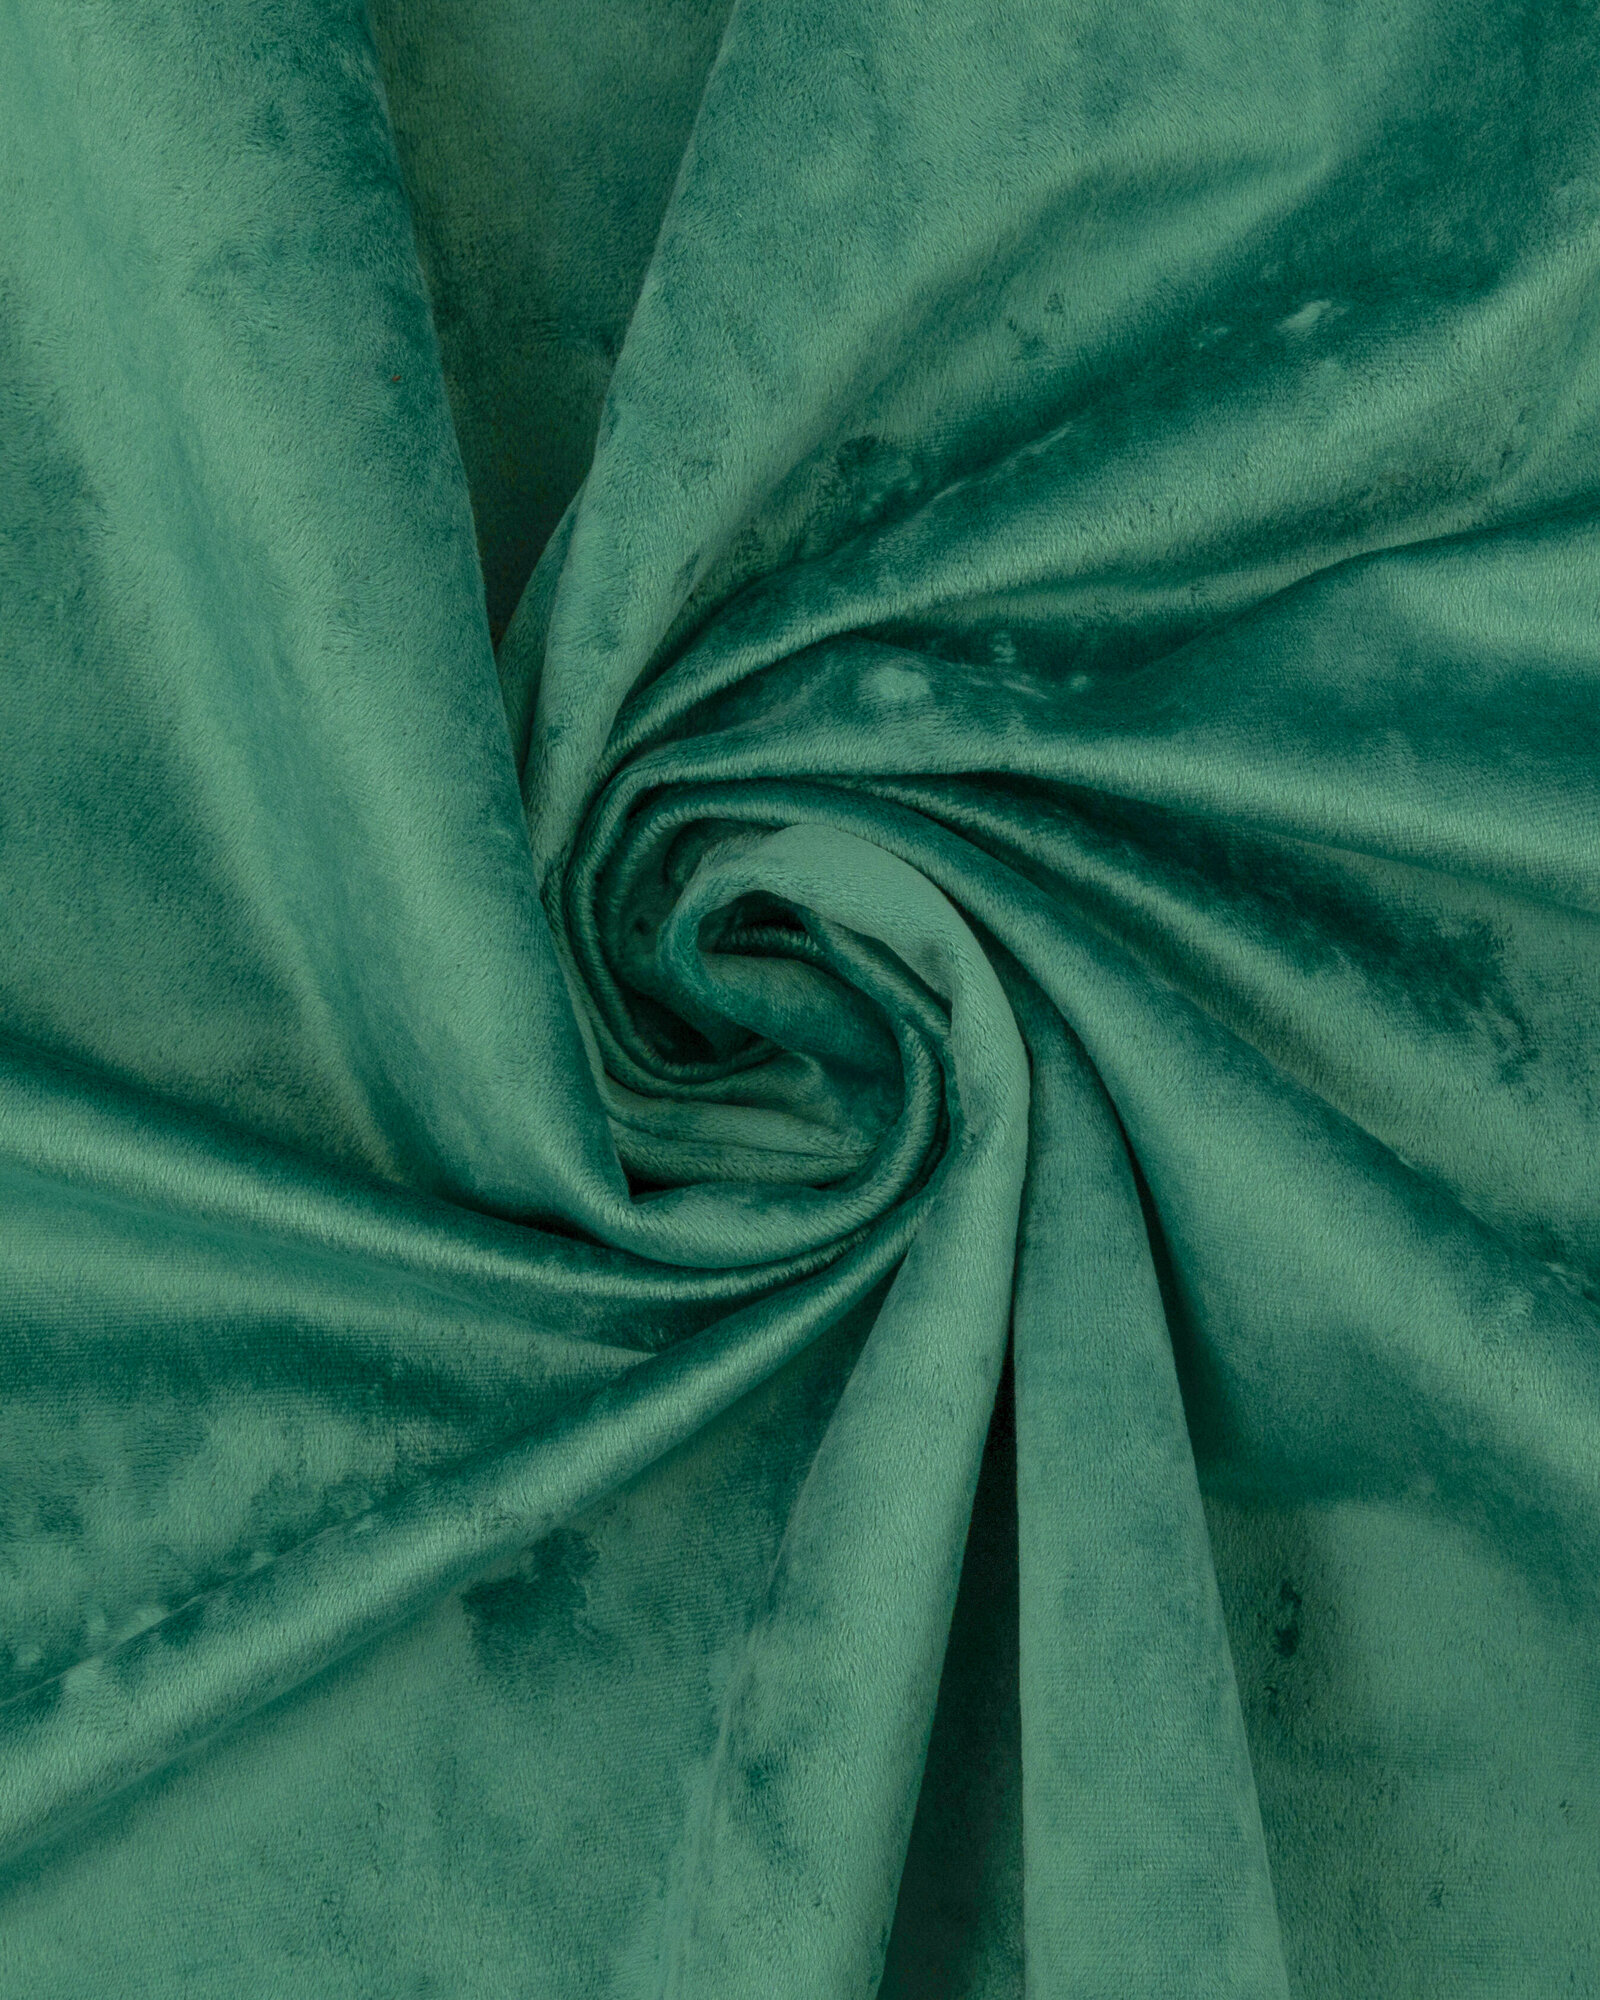 Ткань Велюр, модель Жанет, цвет Изумрудный (14) (Ткань для шитья, для мебели)